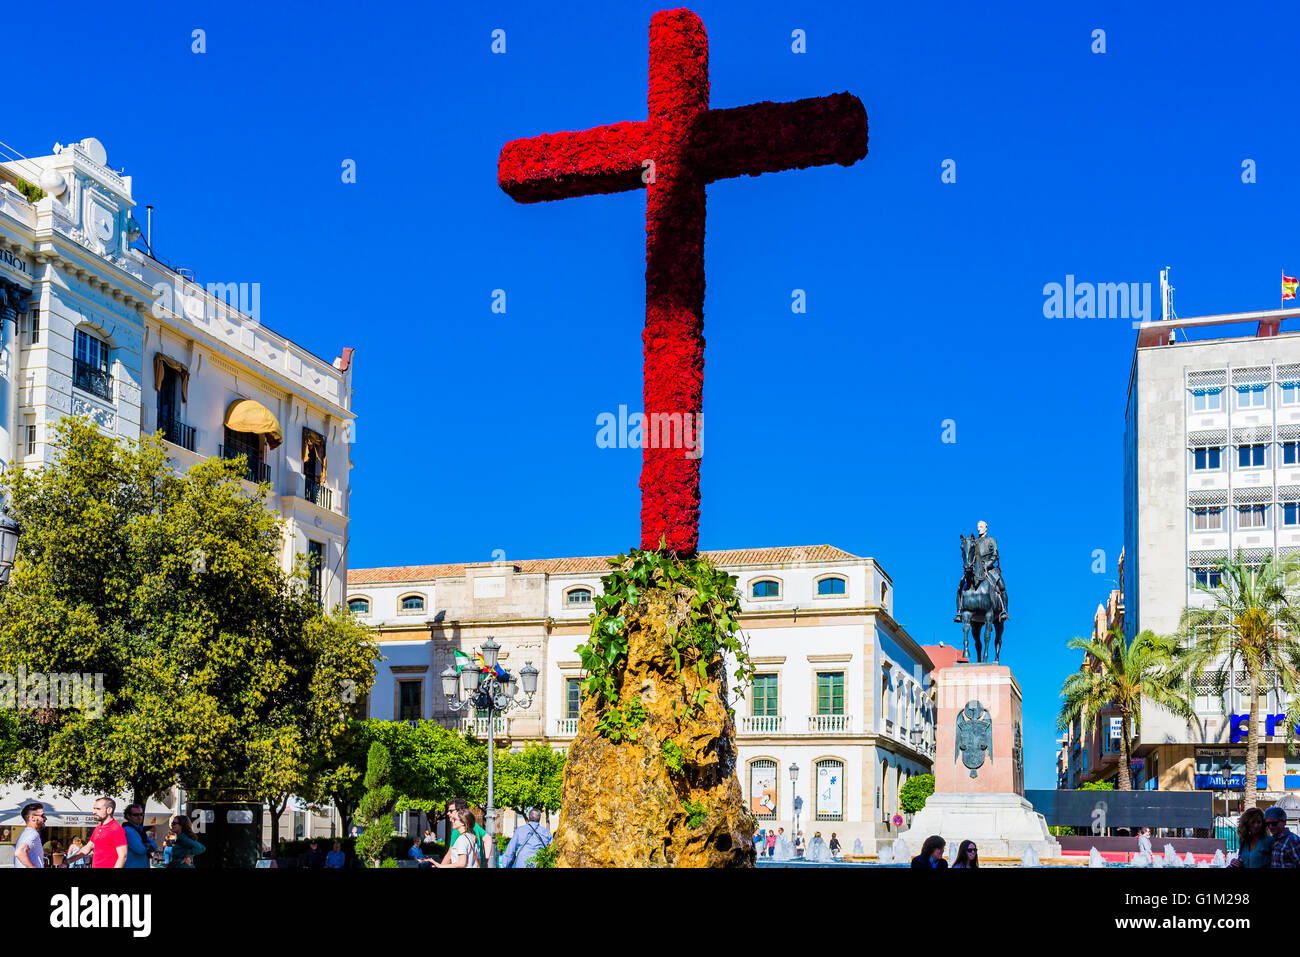 Plaza de las Tendillas. Il Maggio attraversa Festival, Cruces de Mayo, è celebrata in molte parti del mondo. Córdoba, Spagna Foto Stock